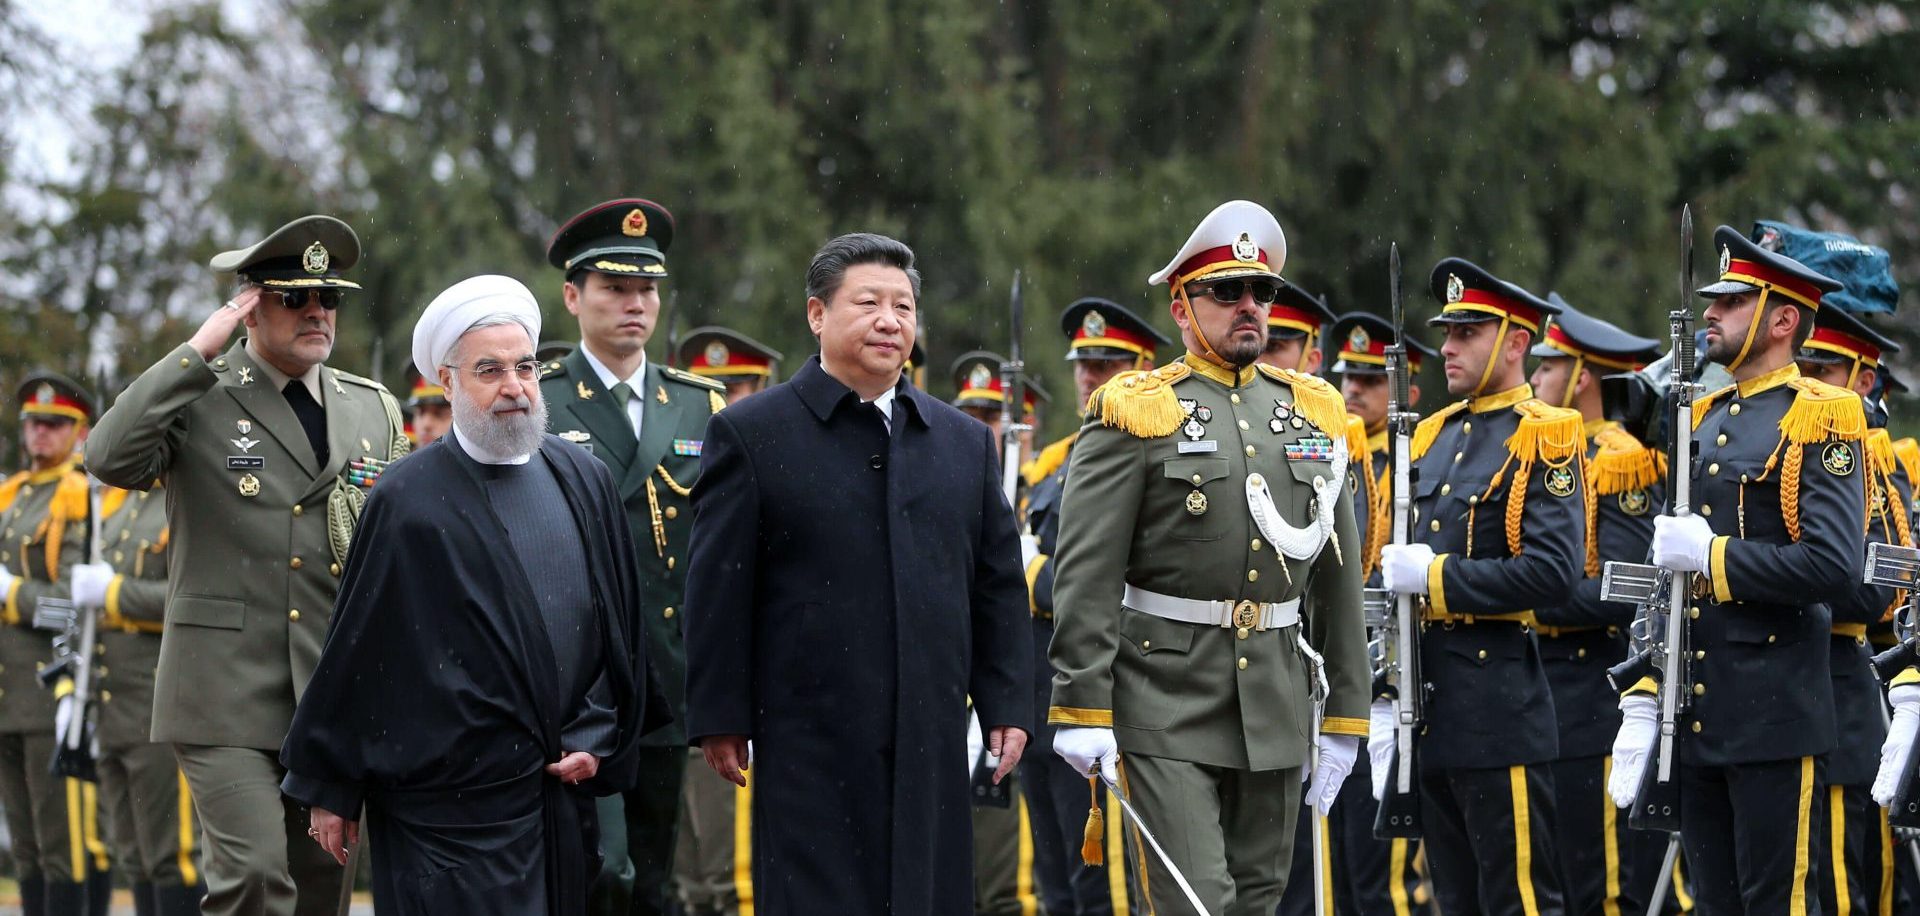 Le président iranien Hassan Rohani cherche l'appui économique de la Chine de Xi Jinping après le retrait américain de l'accord de Vienne sur le nucléaire. (Source : Boston Herald)